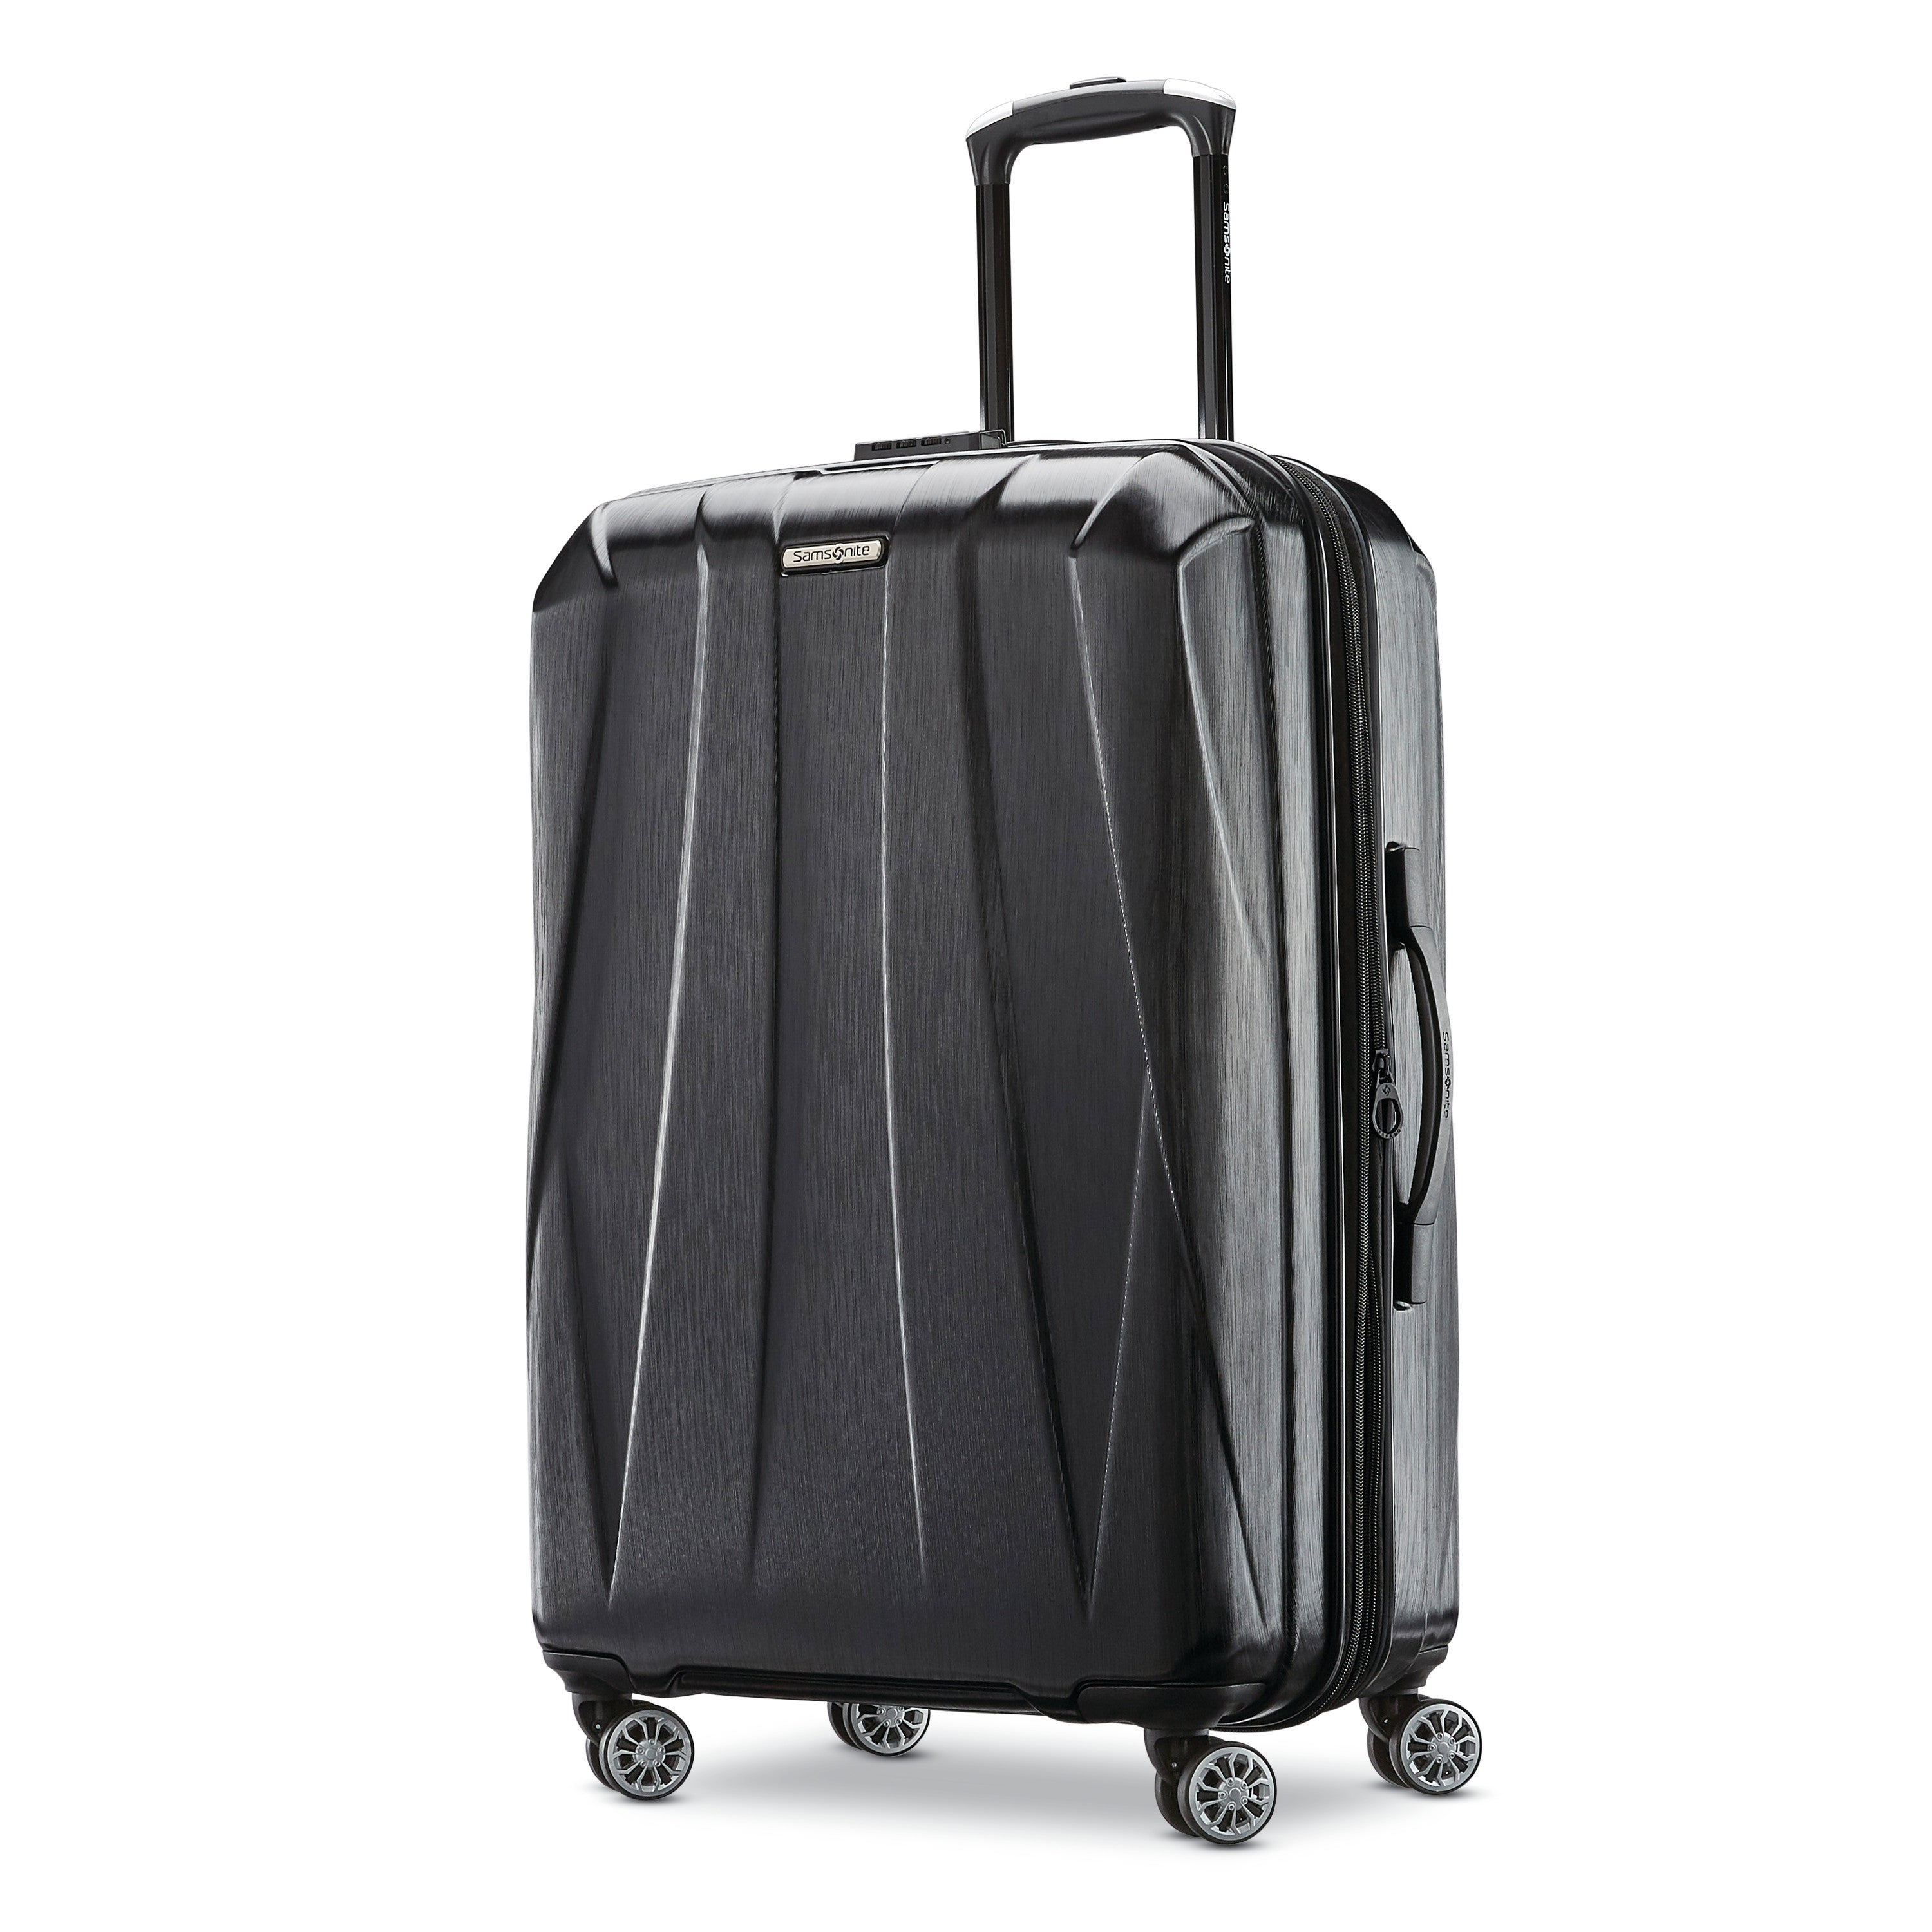 2 Pc Carry-On Spinner Suitcase & Case, TSA Lock Expandable Hardshell Luggage  Set